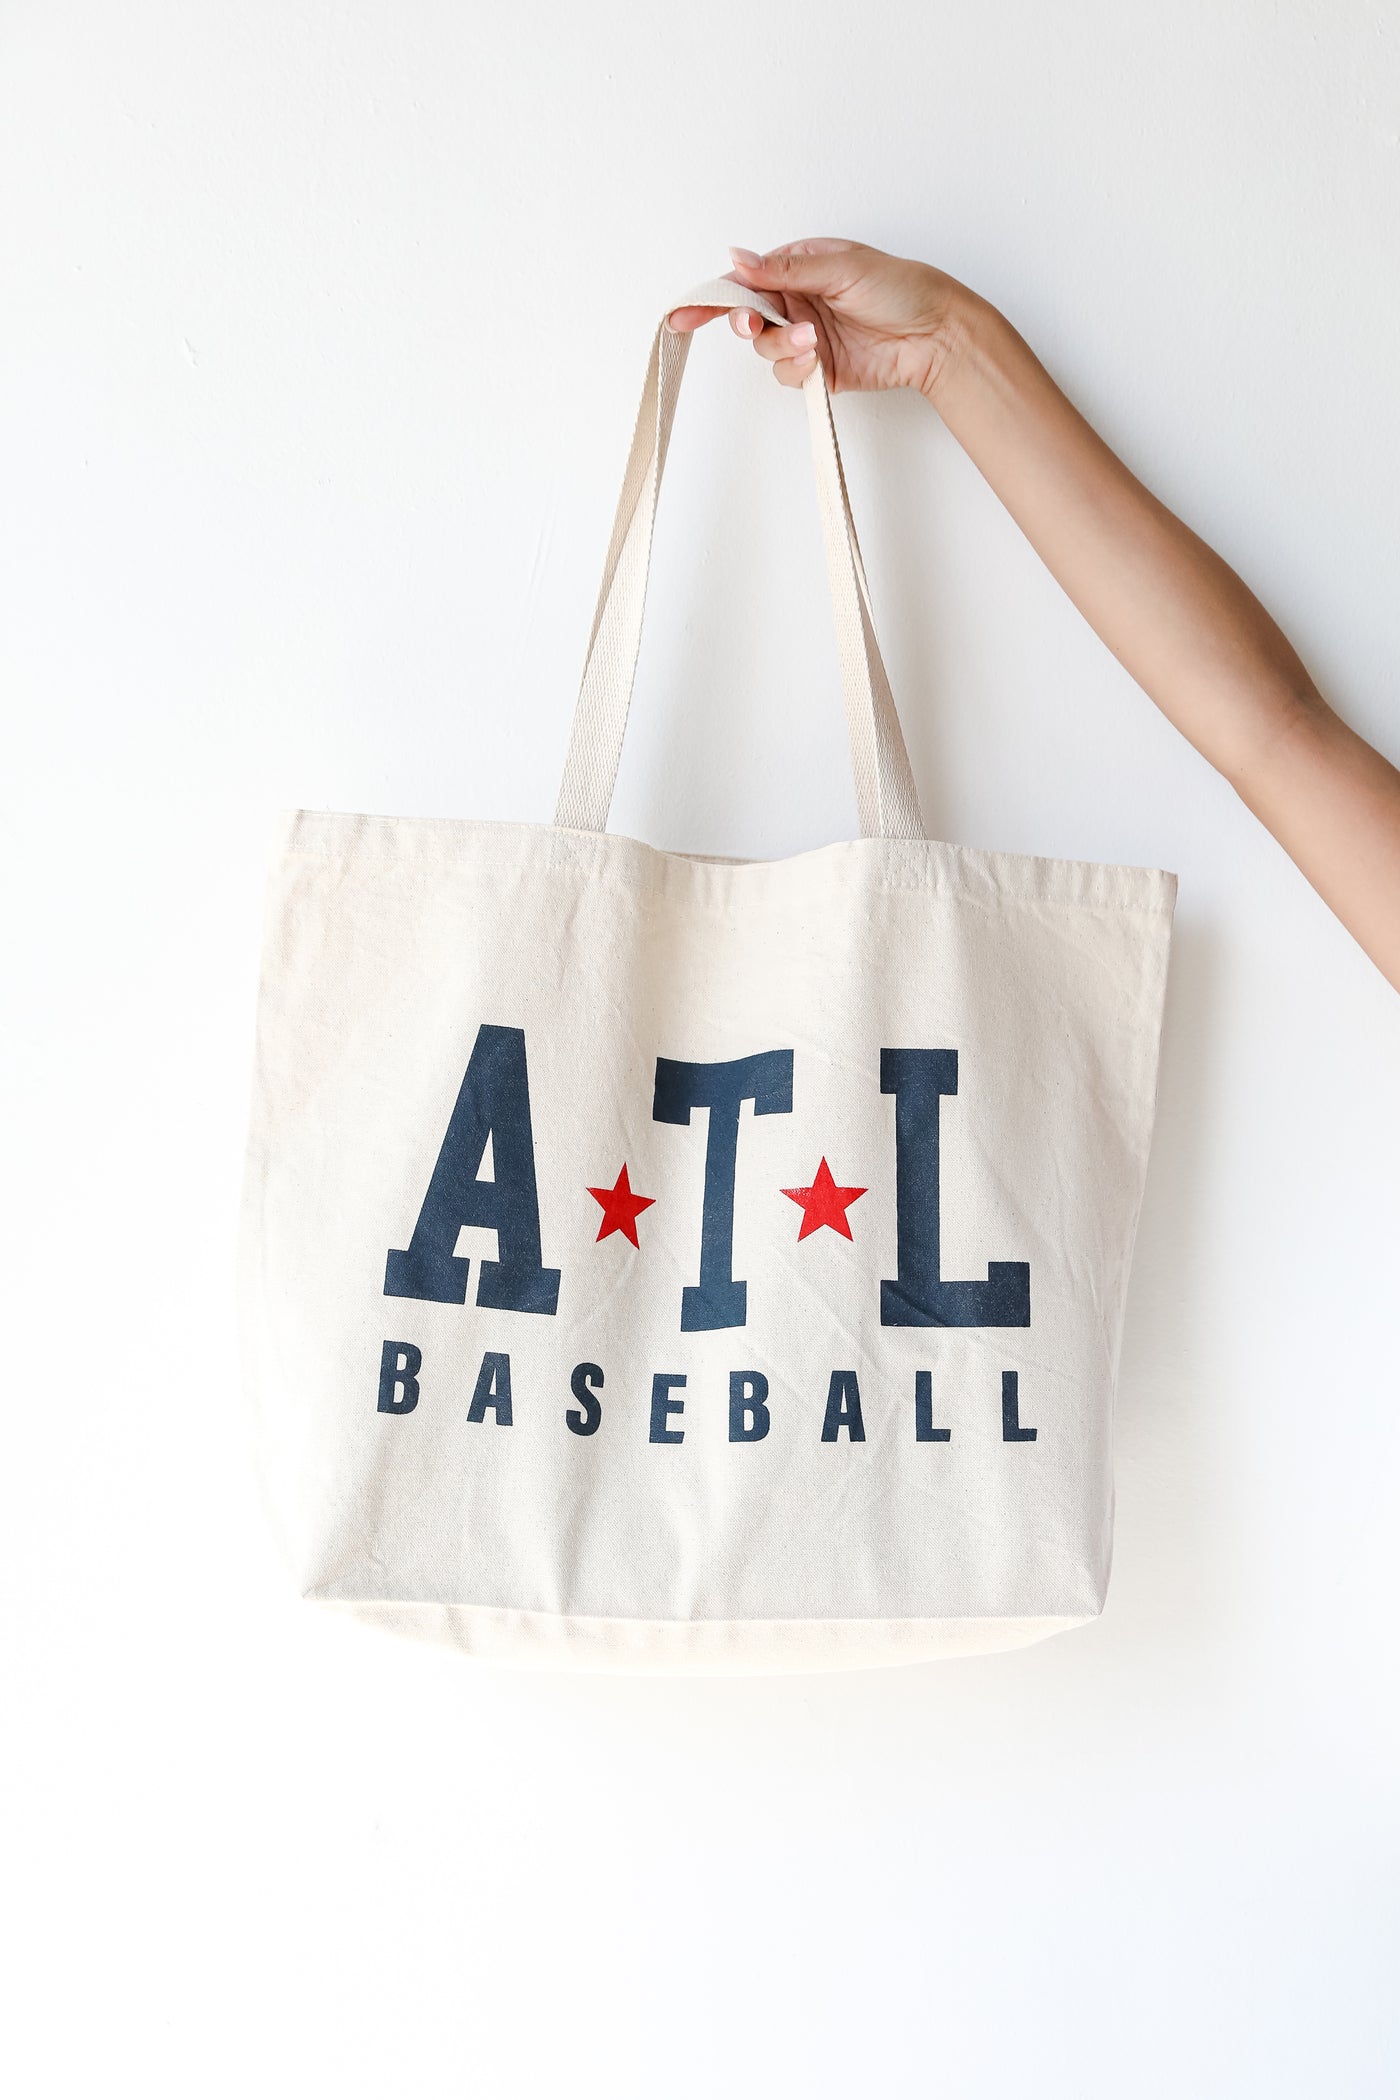 ATL Baseball Star Large Tote Bag front view